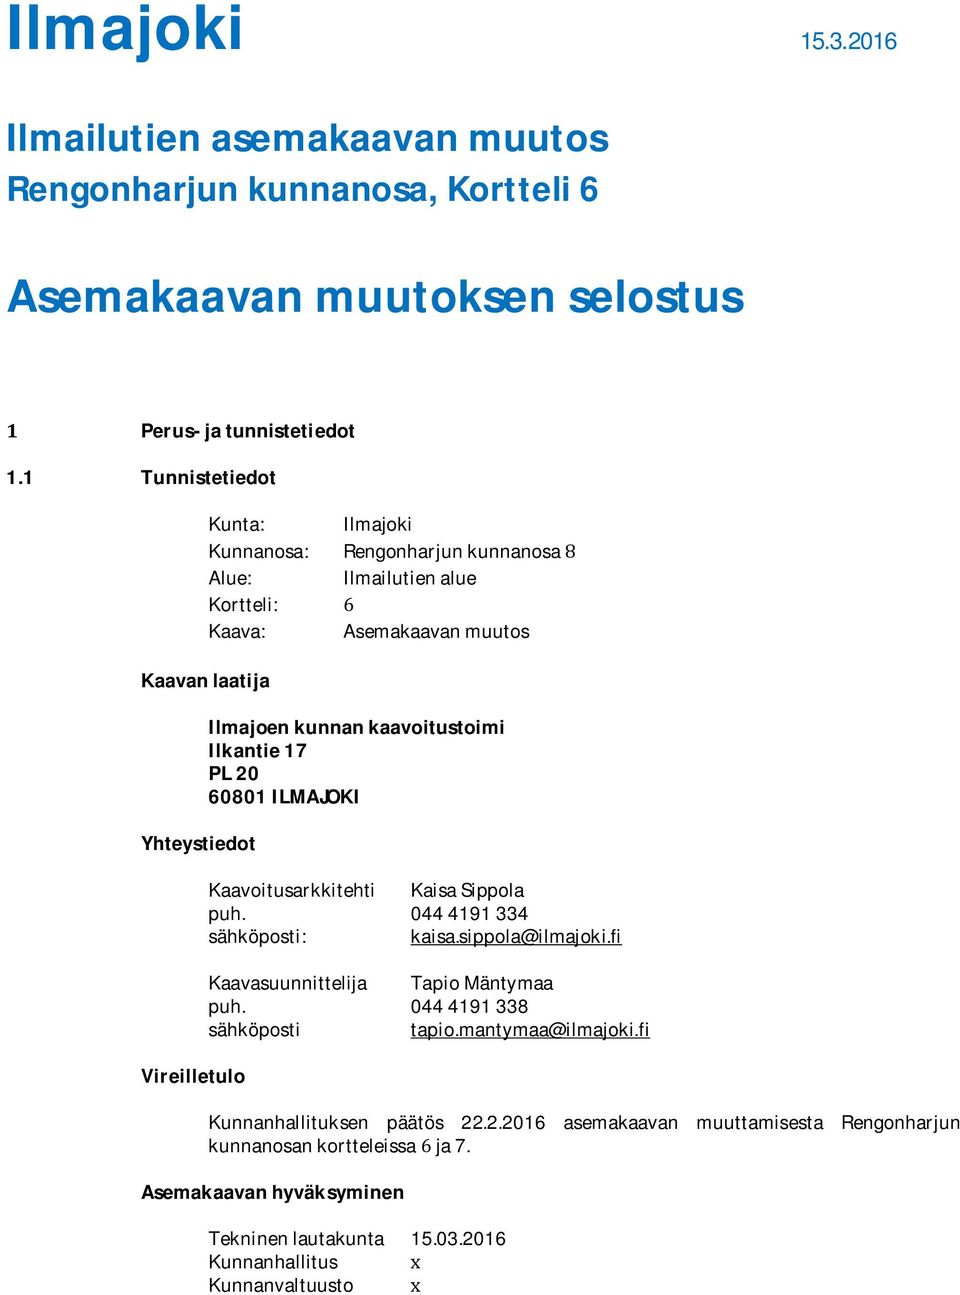 kaavoitustoimi Ilkantie 17 PL 20 60801 ILMAJOKI Kaavoitusarkkitehti Kaisa Sippola puh. 044 4191 334 sähköposti: kaisa.sippola@ilmajoki.fi Kaavasuunnittelija Tapio Mäntymaa puh.